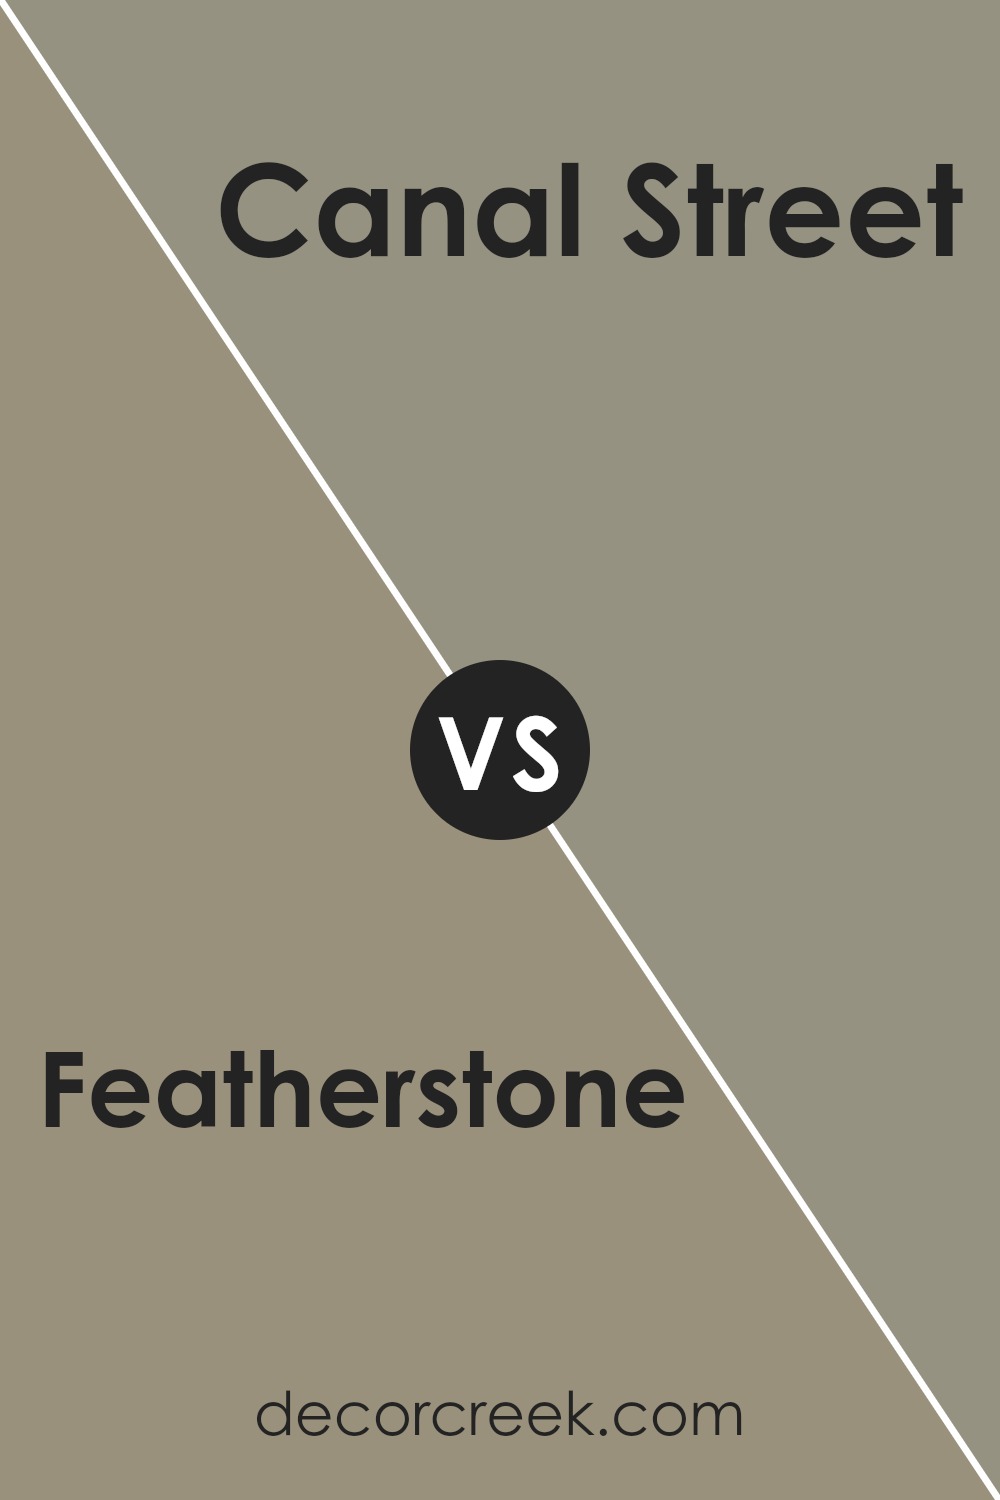 featherstone_sw_9518_vs_canal_street_sw_9523